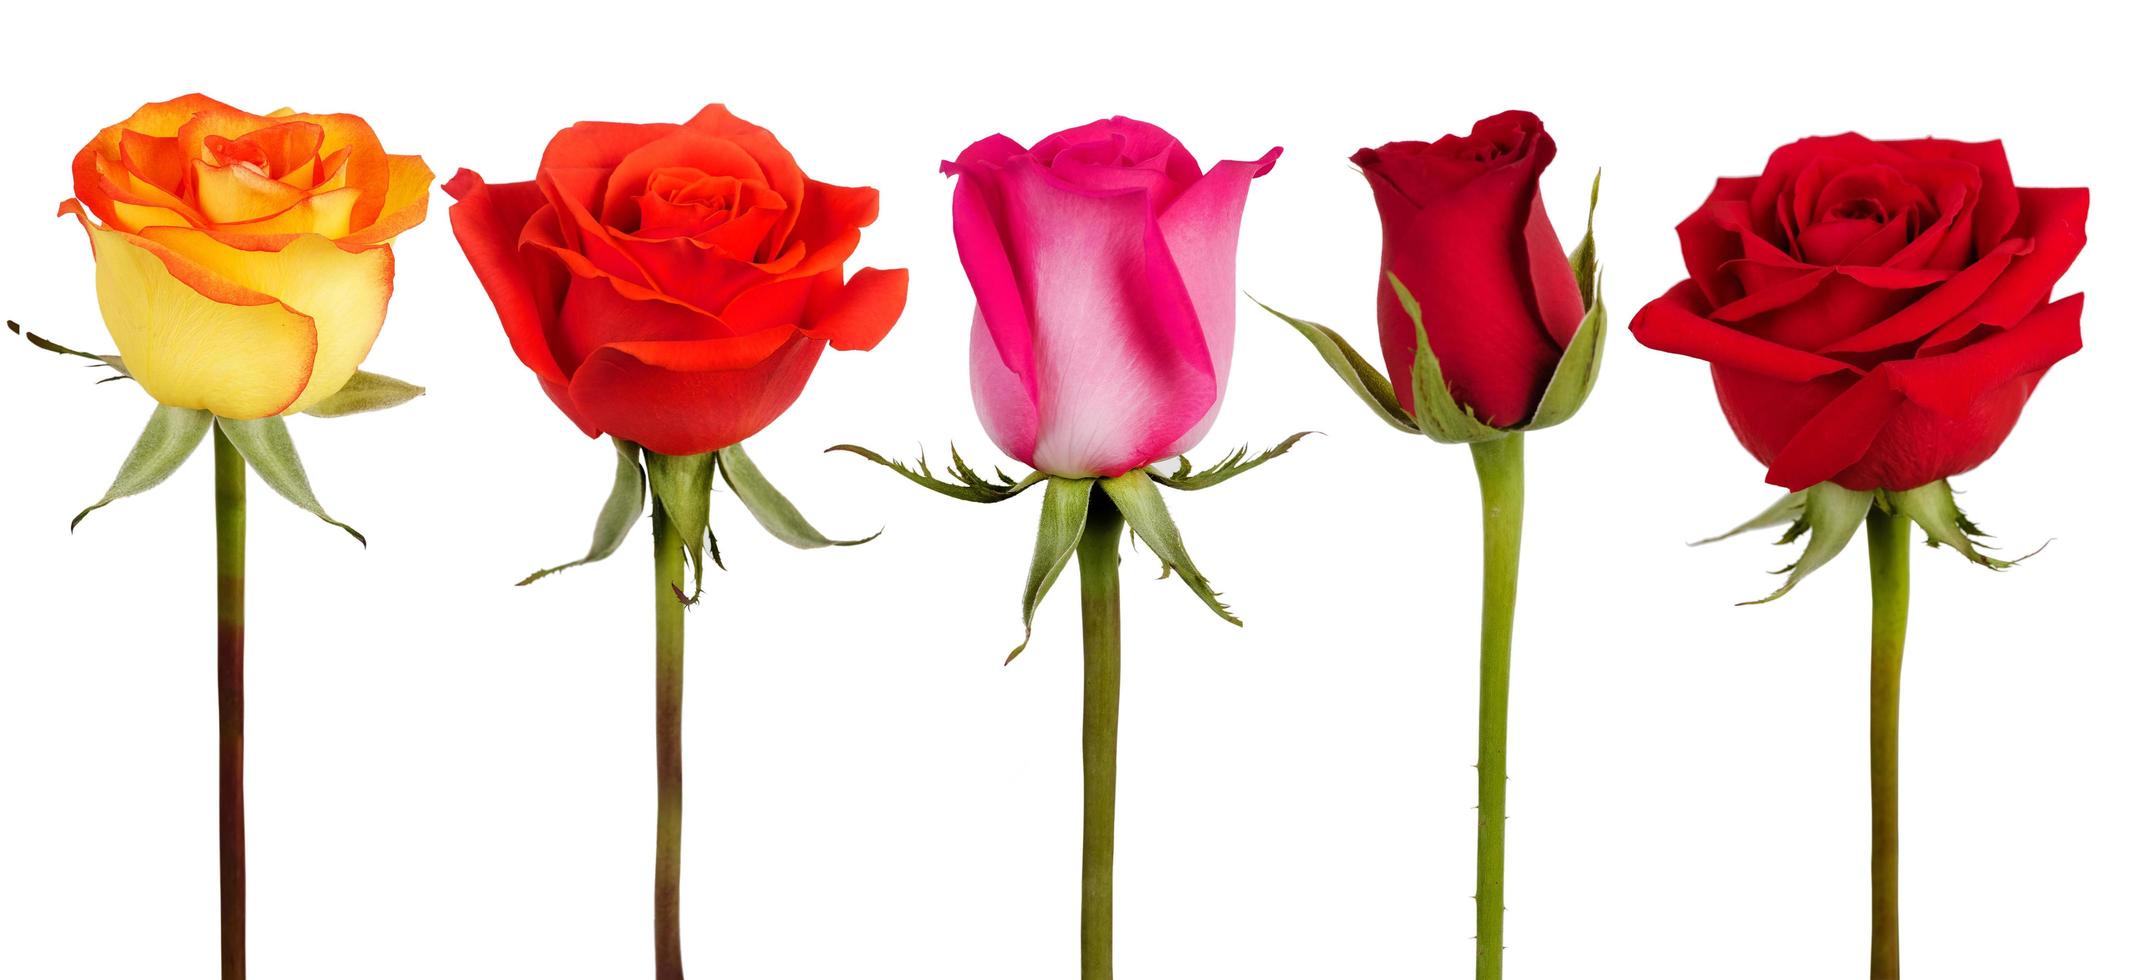 vijf rozen van verschillende kleuren foto